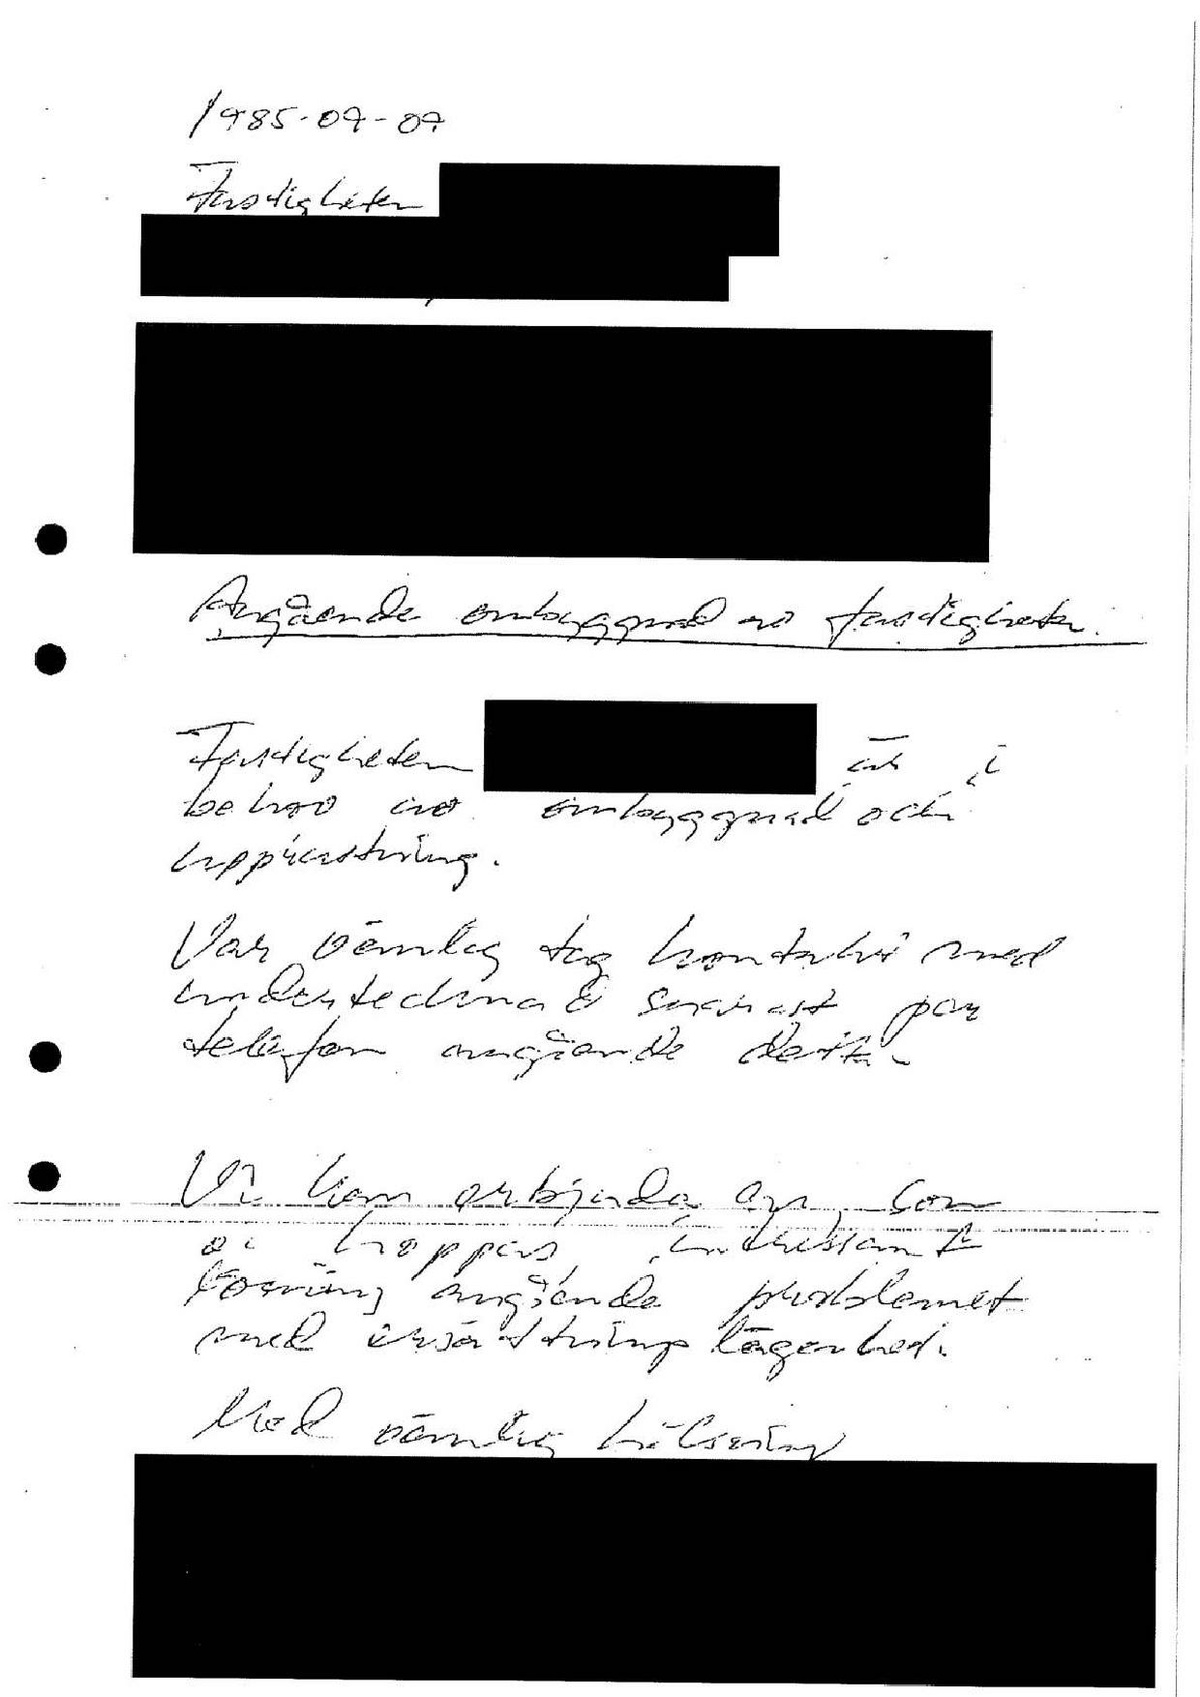 Pol-1994-04-27 DH15988-00 PolPM samtal med granne och papper om GFs lägenhet på LG.pdf